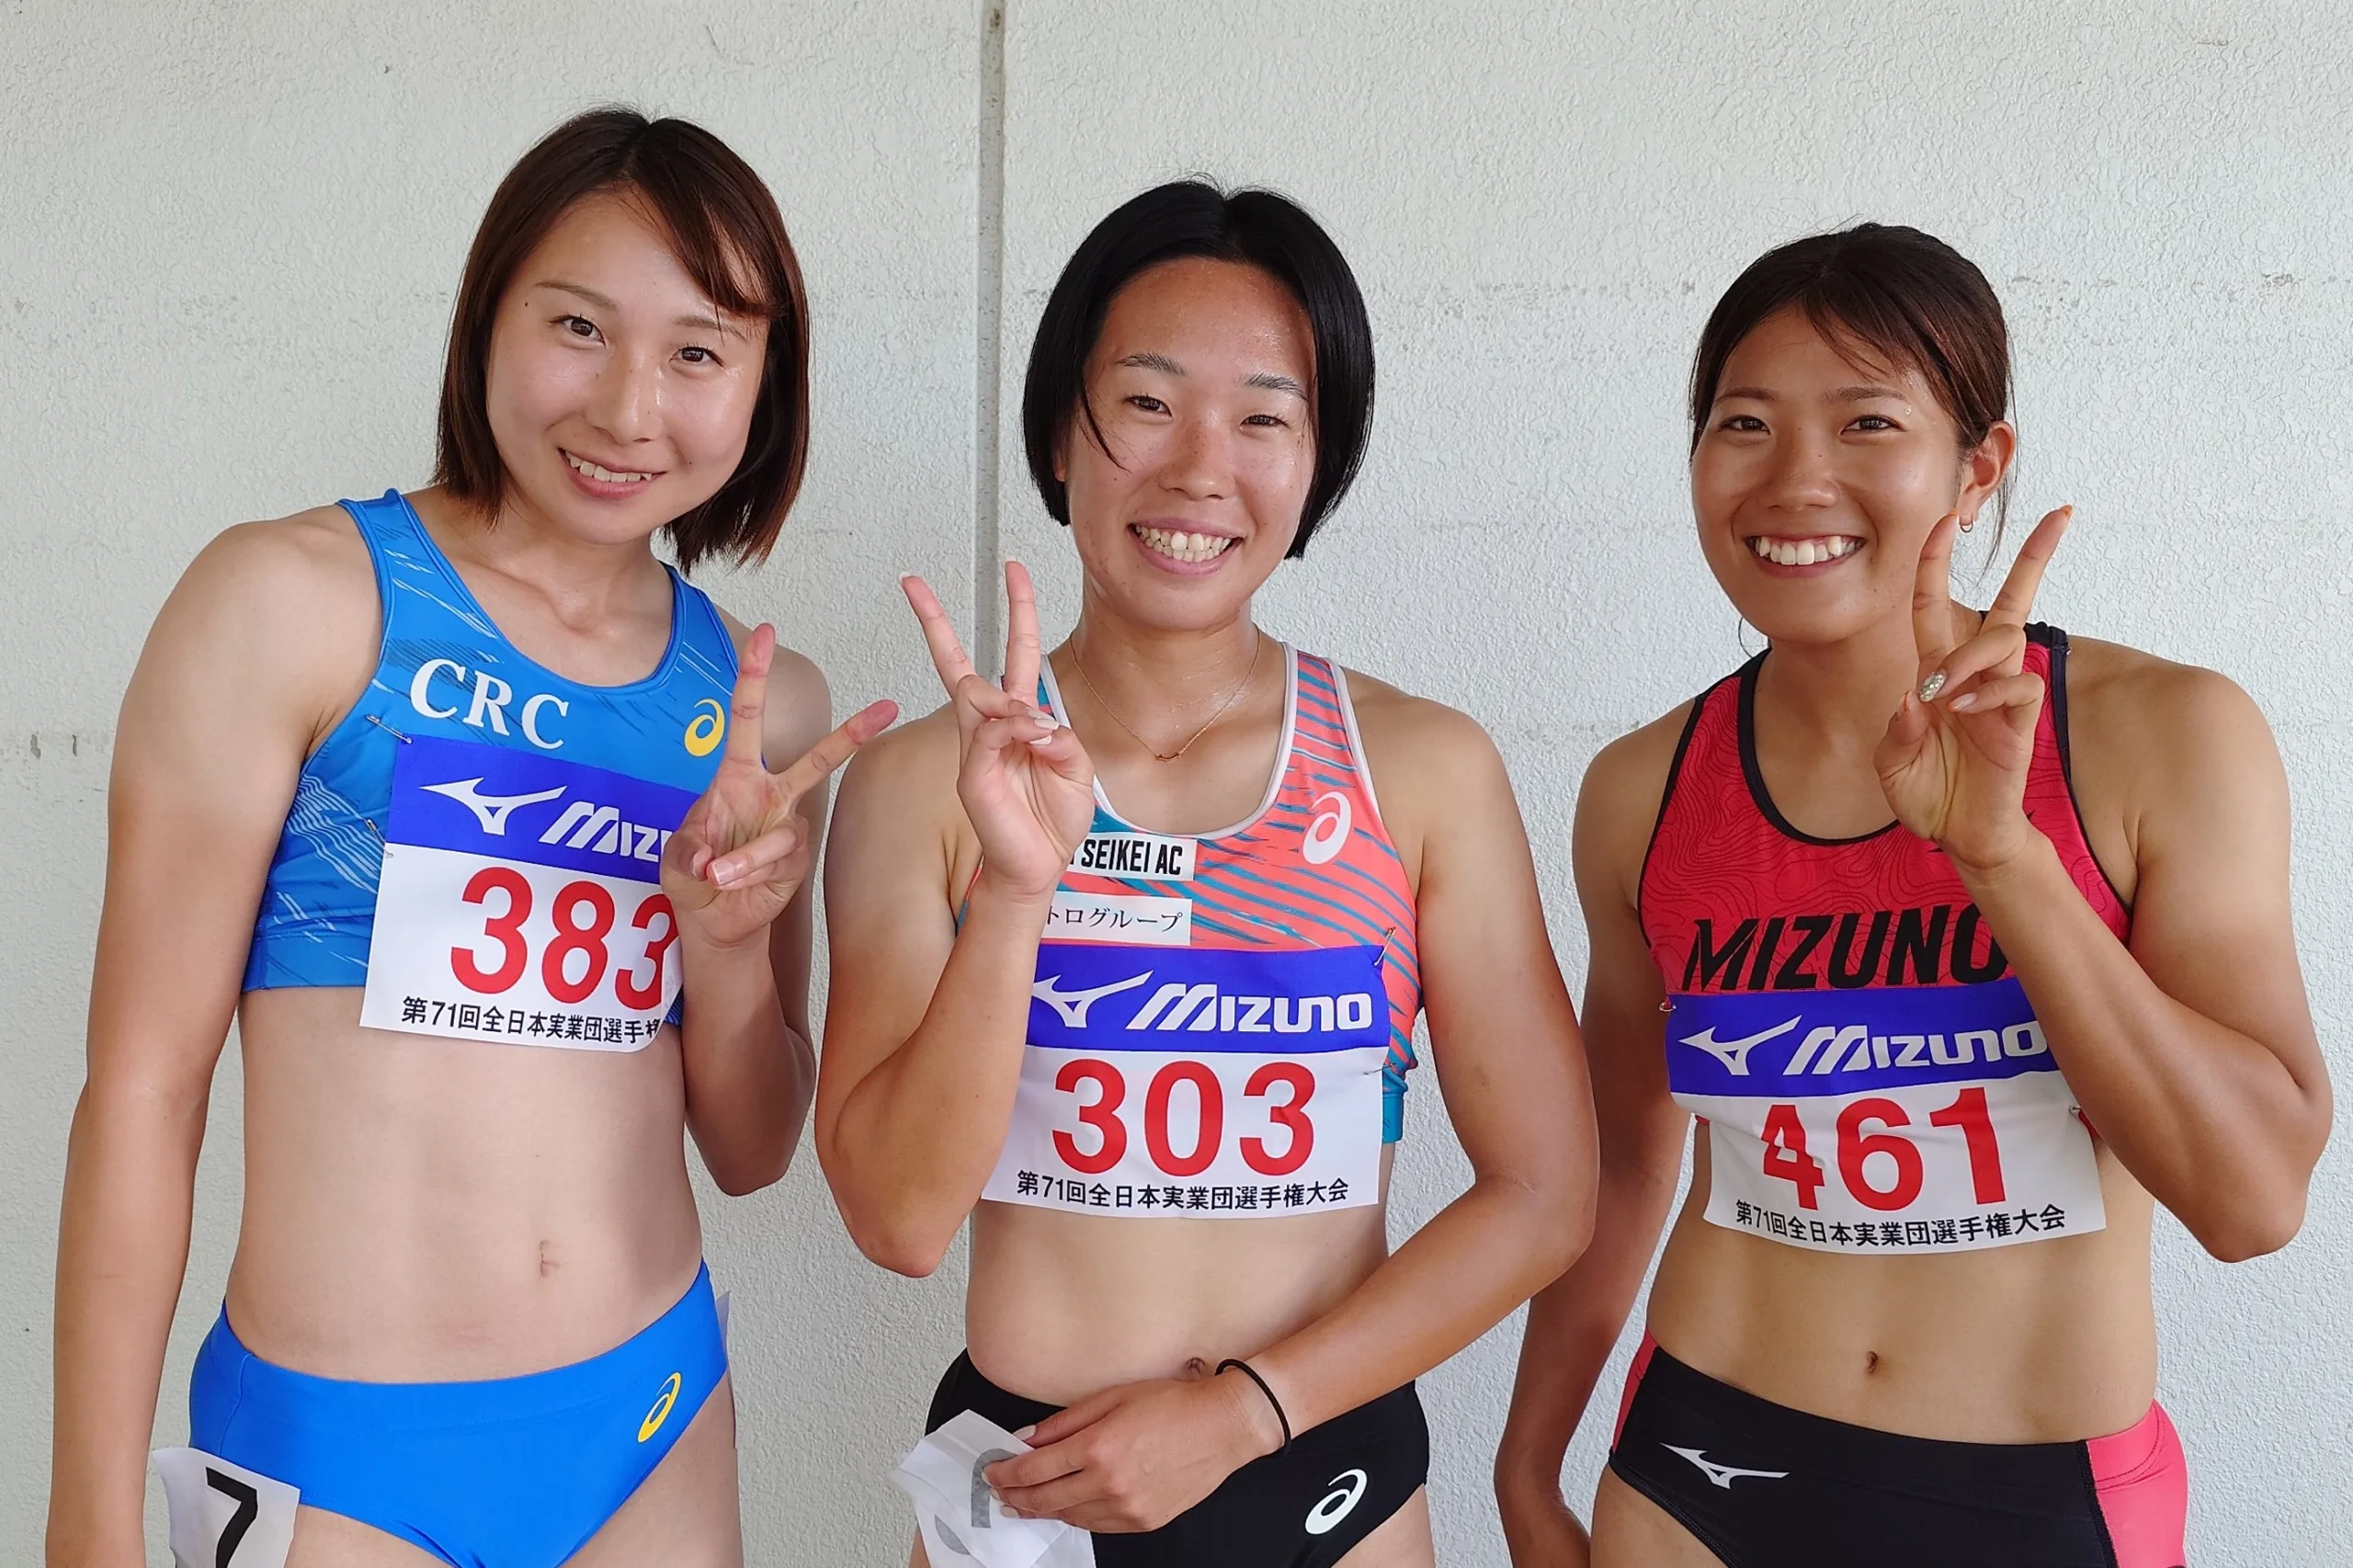 東京五輪リレー代表の齋藤愛美が現役引退「幸せな競技人生でした」200mでU20日本記録樹立、地元インターハイ3冠の偉業